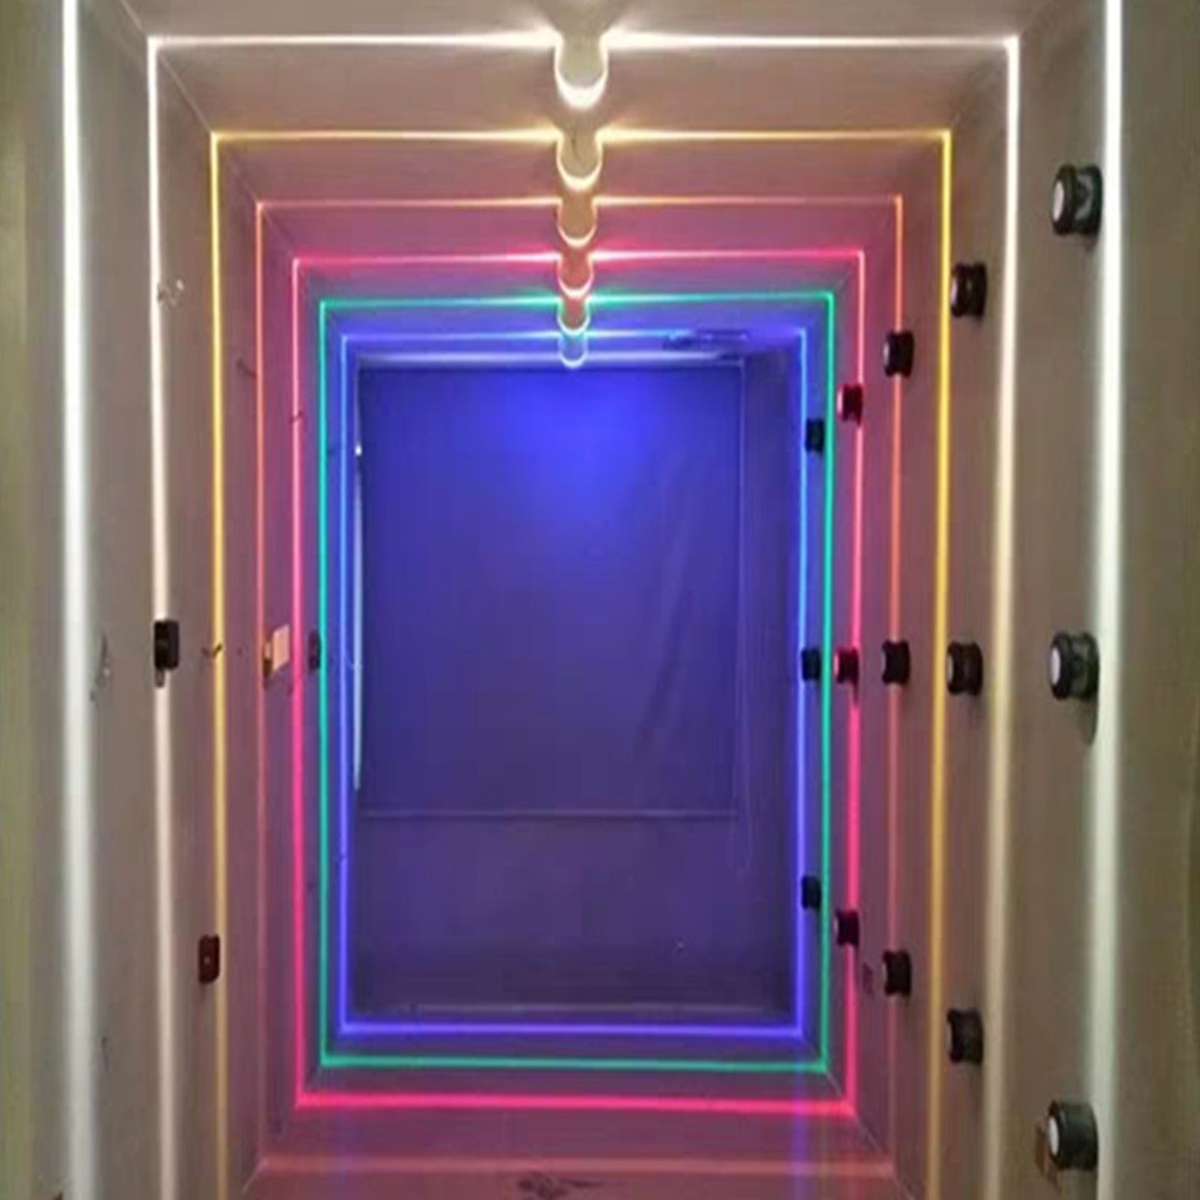 10W-220V-Decorative-LED-Ceiling-Light-Door-Frame-360-Degree-Aisle-Bar-Corridor-Ray-Beam-1772079-5